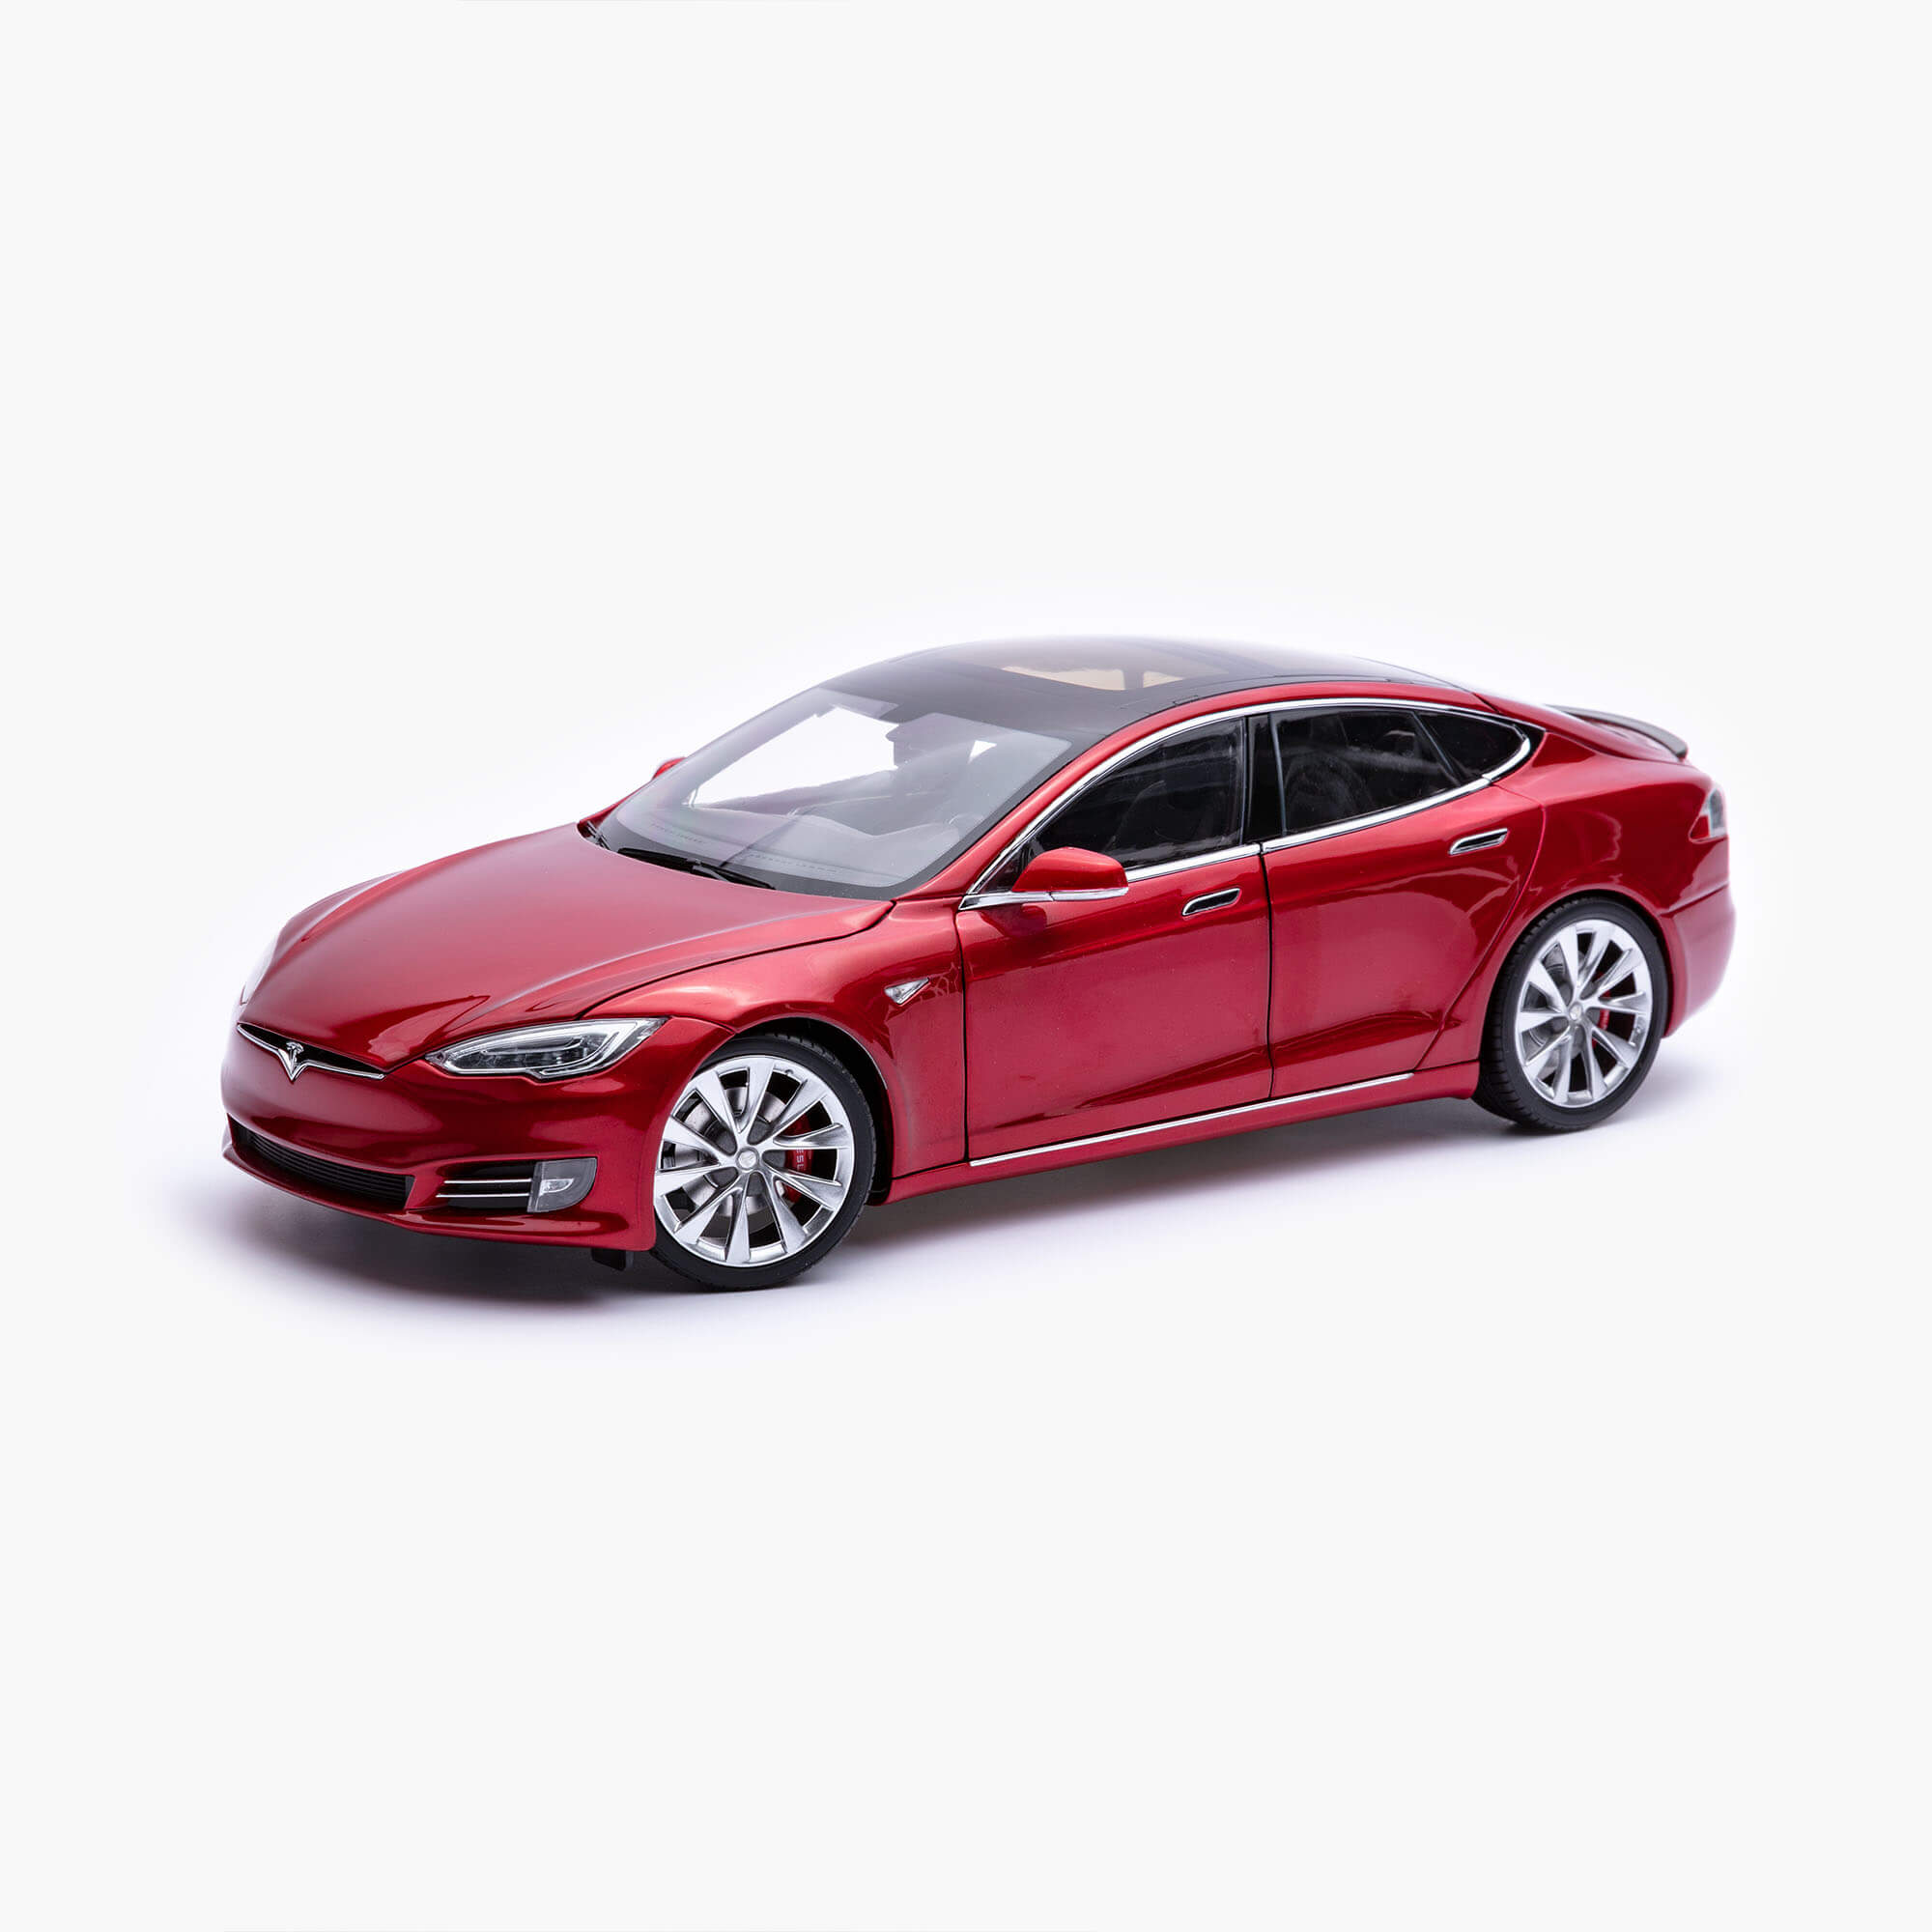 限量 1:18 Model S 模型